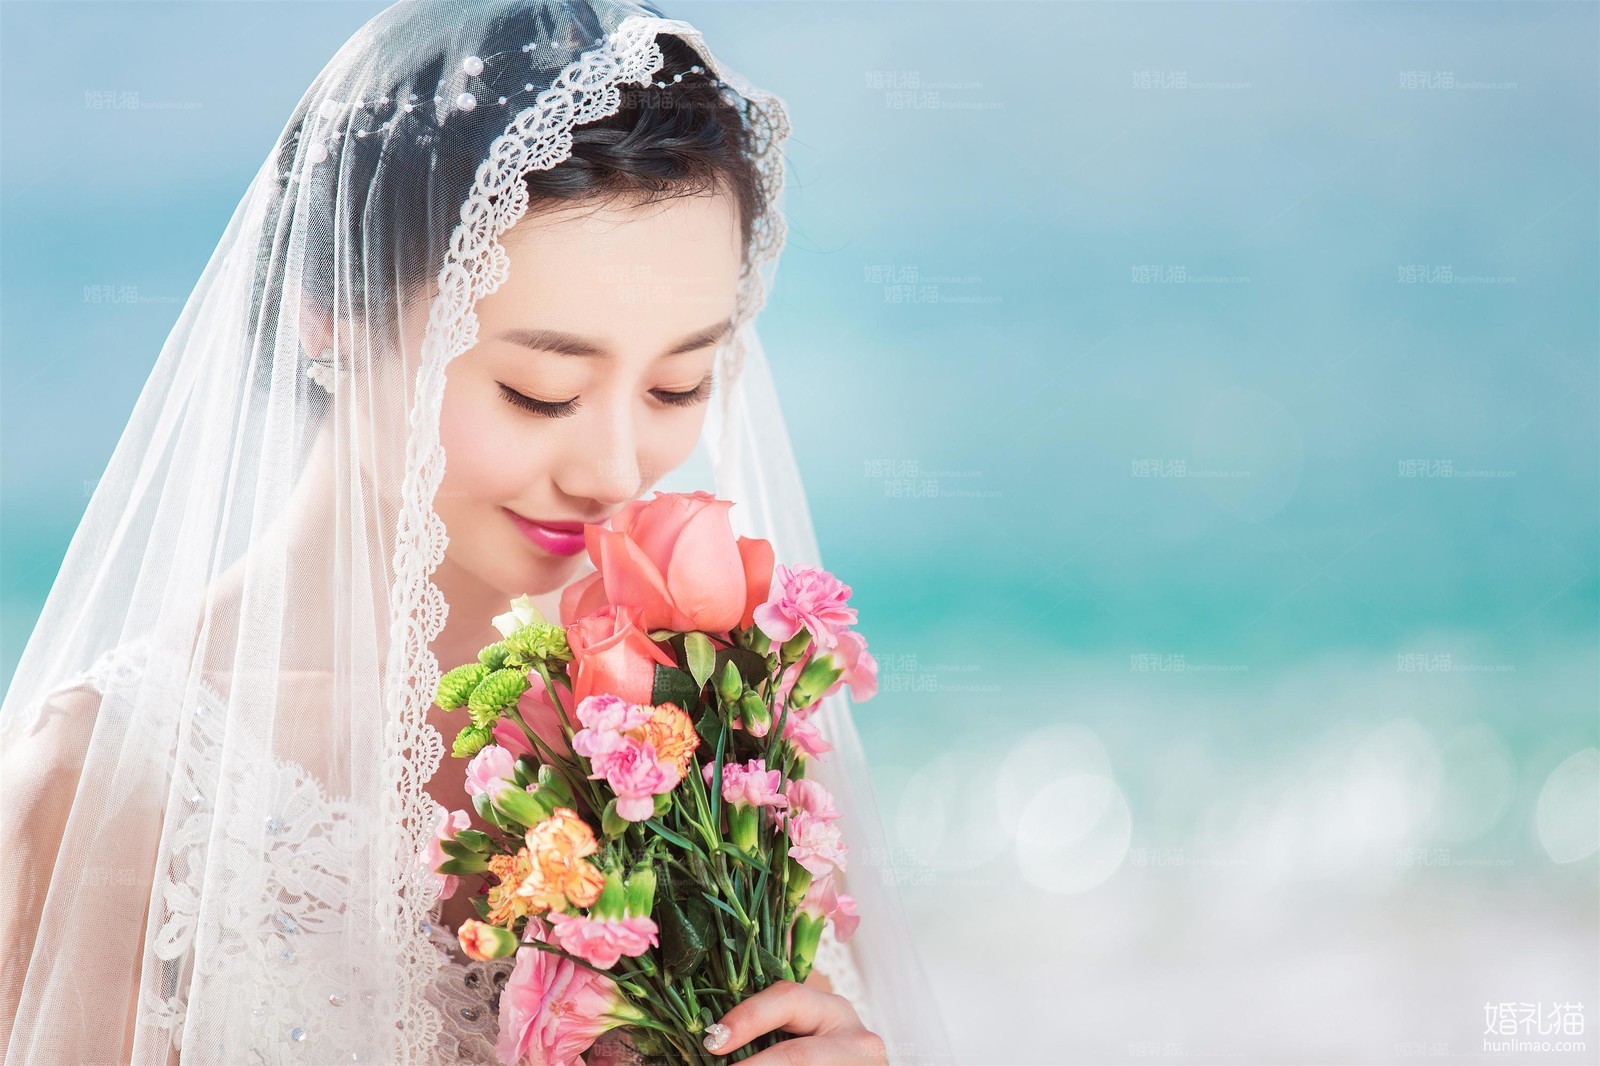 海景婚纱摄影,[海景],广州婚纱照,婚纱照图片